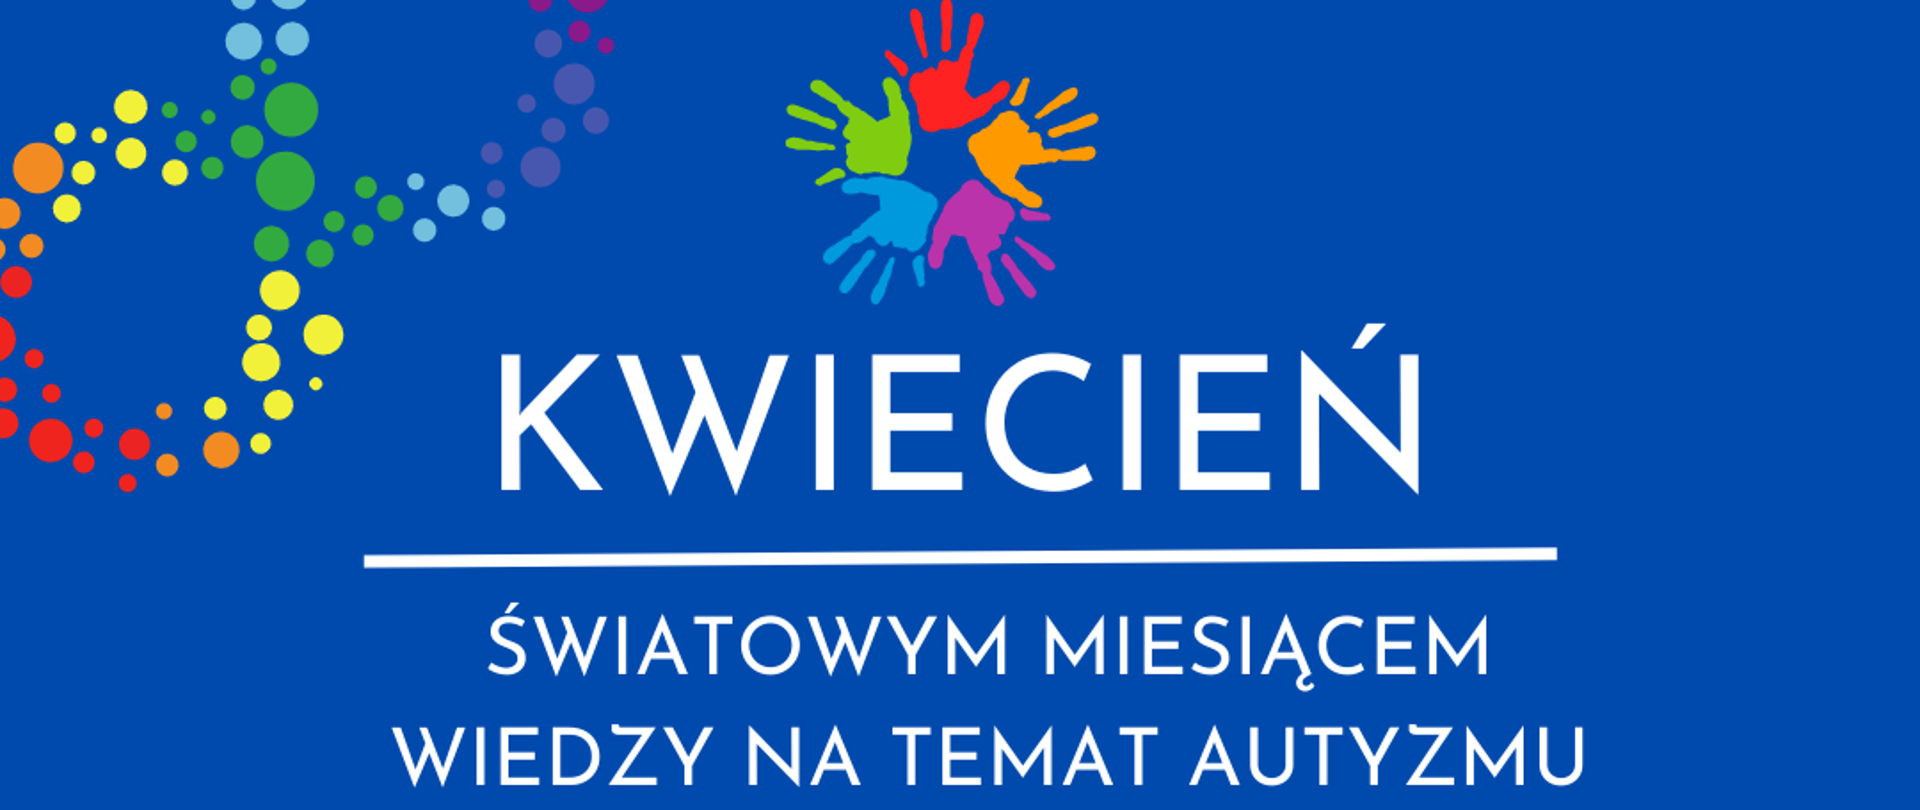 Na niebieskim tle plakatu na środku kolorowe dziecięce dłonie, pod spodem biały napis informujący o wydarzeniu związanym z autyzmem